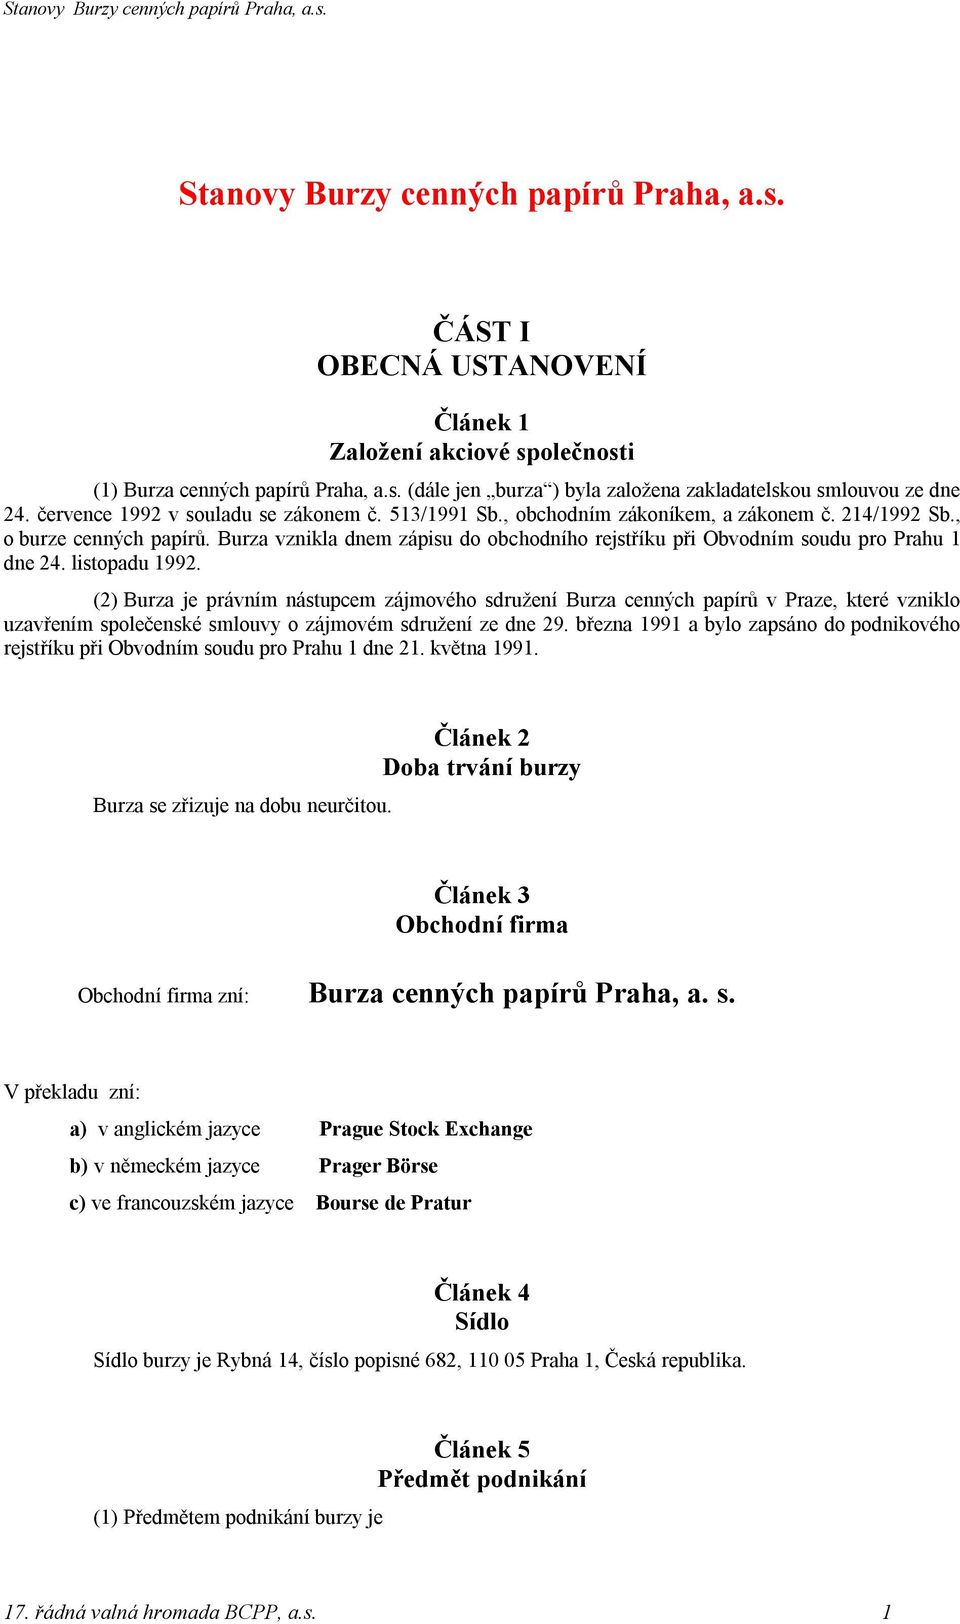 Burza vznikla dnem zápisu do obchodního rejstříku při Obvodním soudu pro Prahu 1 dne 24. listopadu 1992.